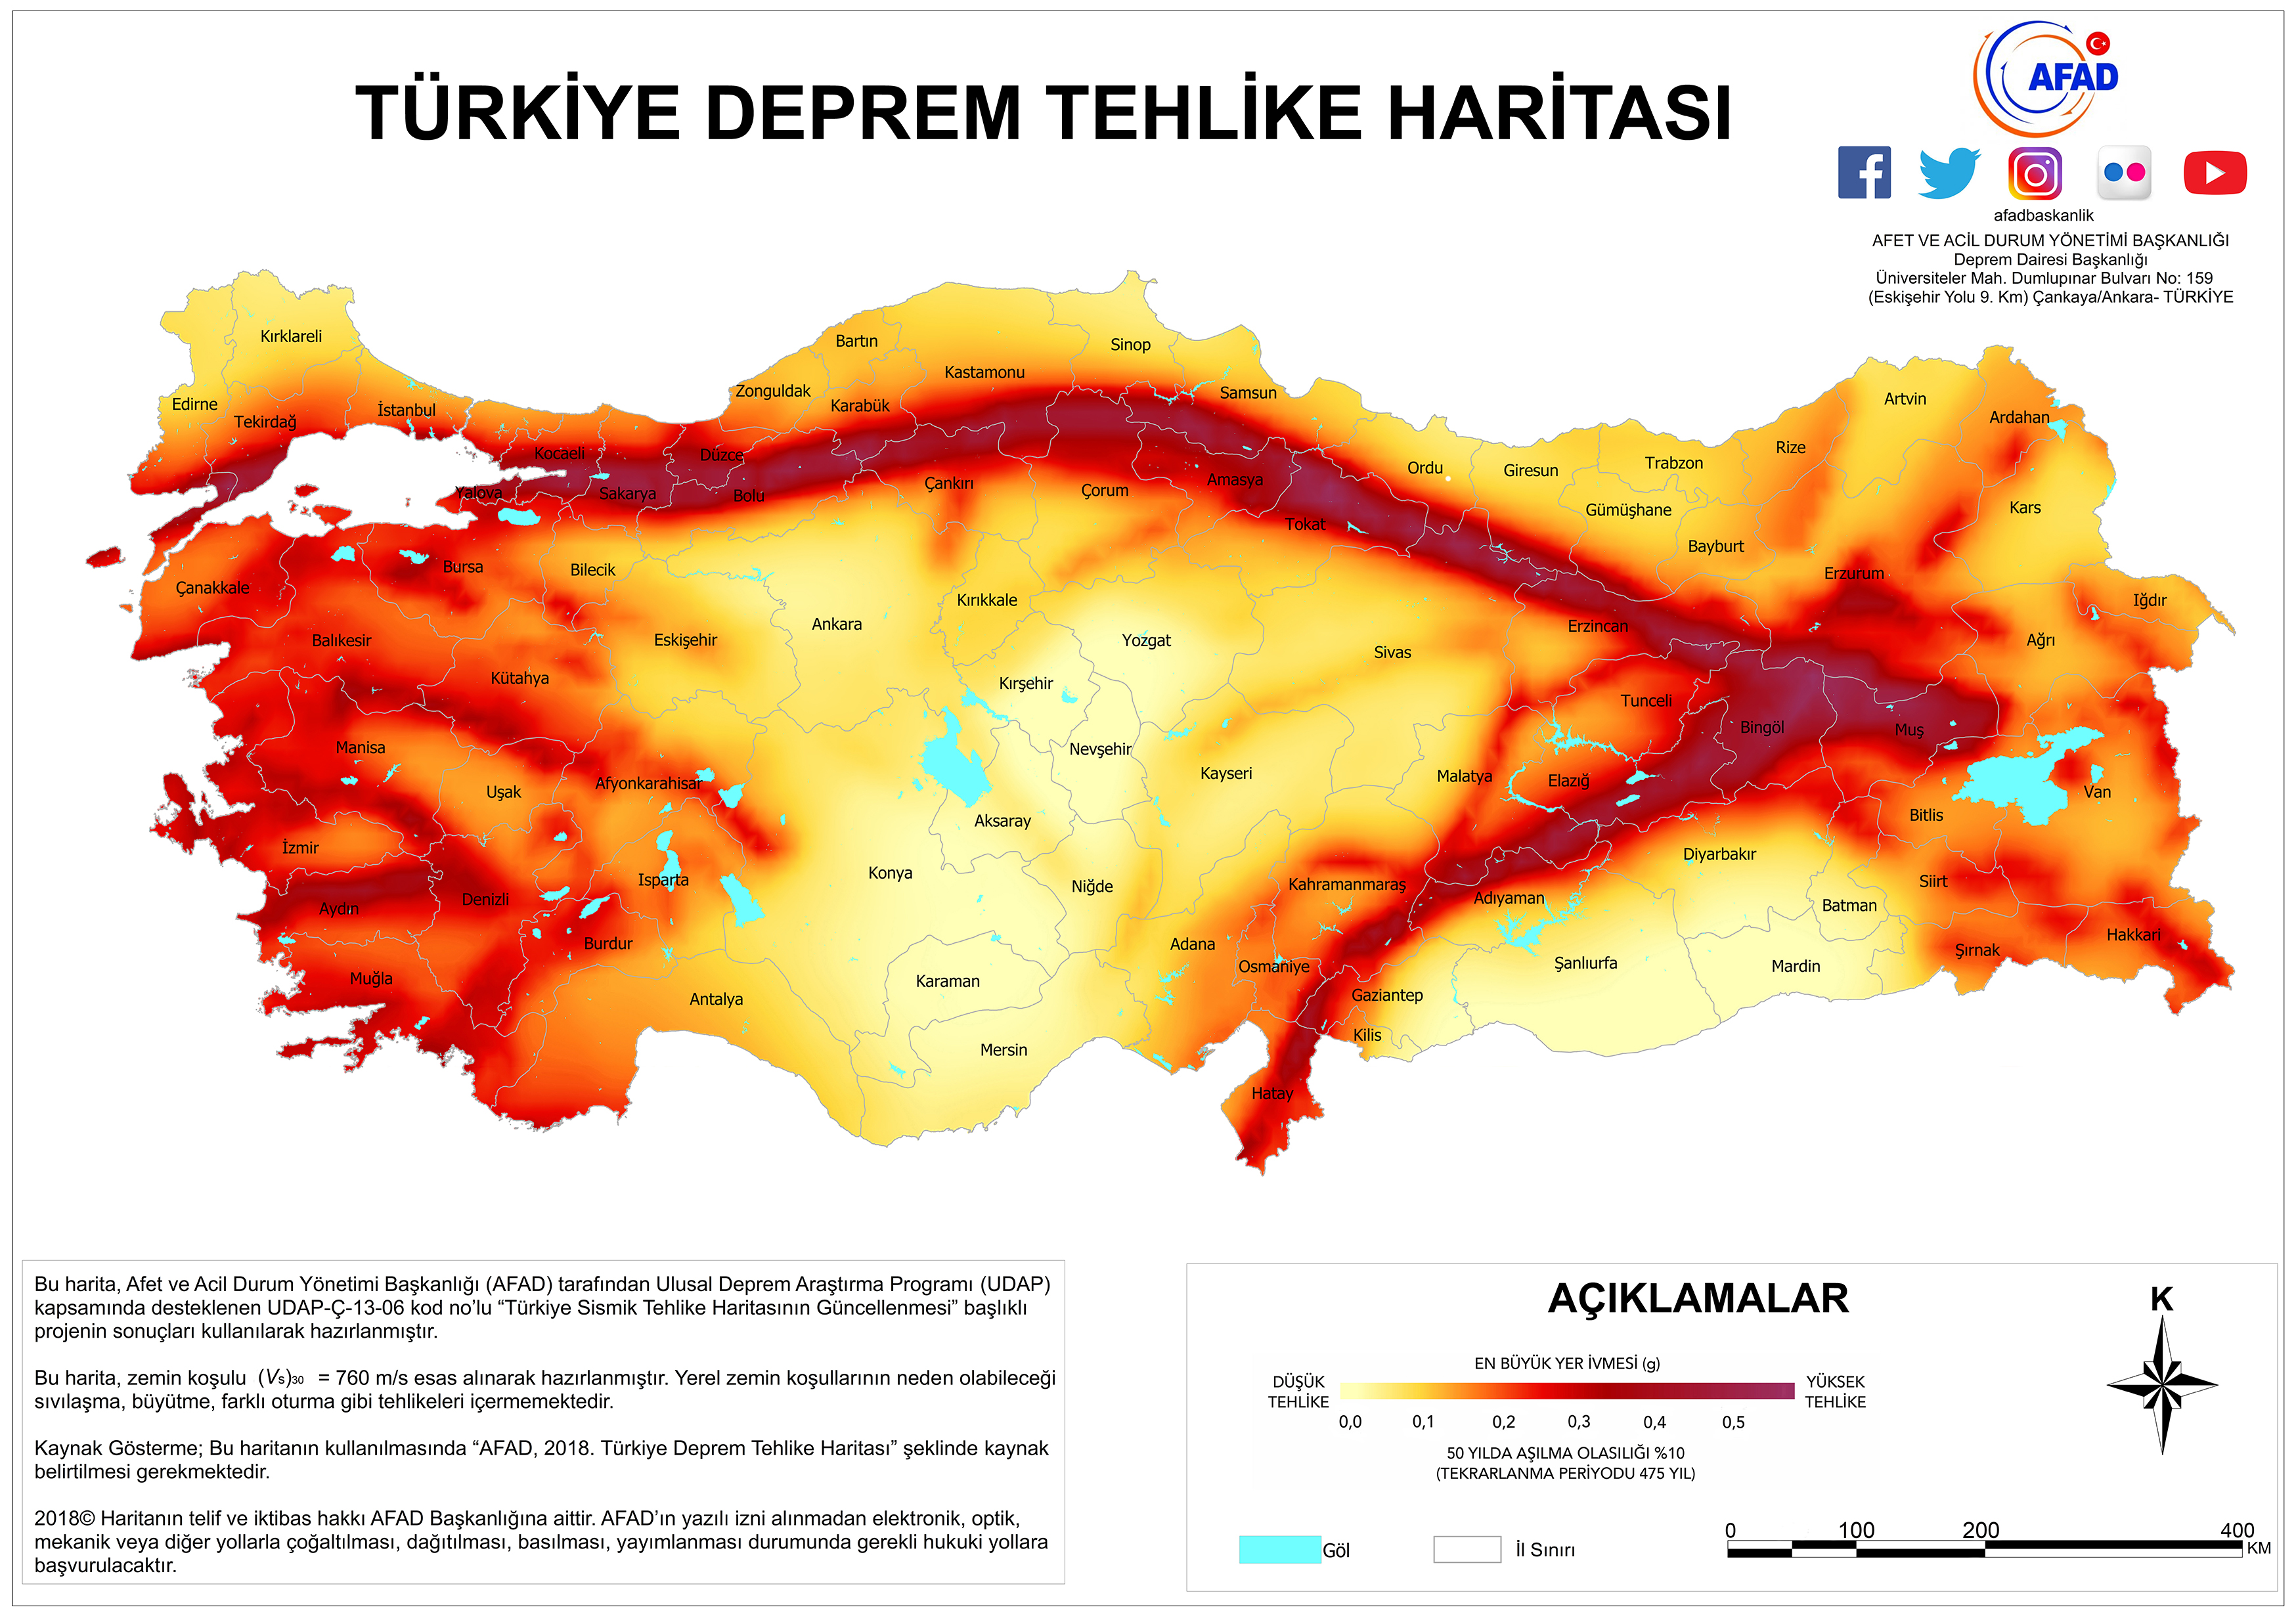 6 Şubat'taki felaketin ardından güncellenen fay hattı haritaları, Konya'nın riskli durumunu açıkça ortaya koyuyor. Ayrıca, vatandaşlar e-devlet hesapları üzerinden giriş yaparak kendi konumlarında deprem riskini hesaplayabiliyor.